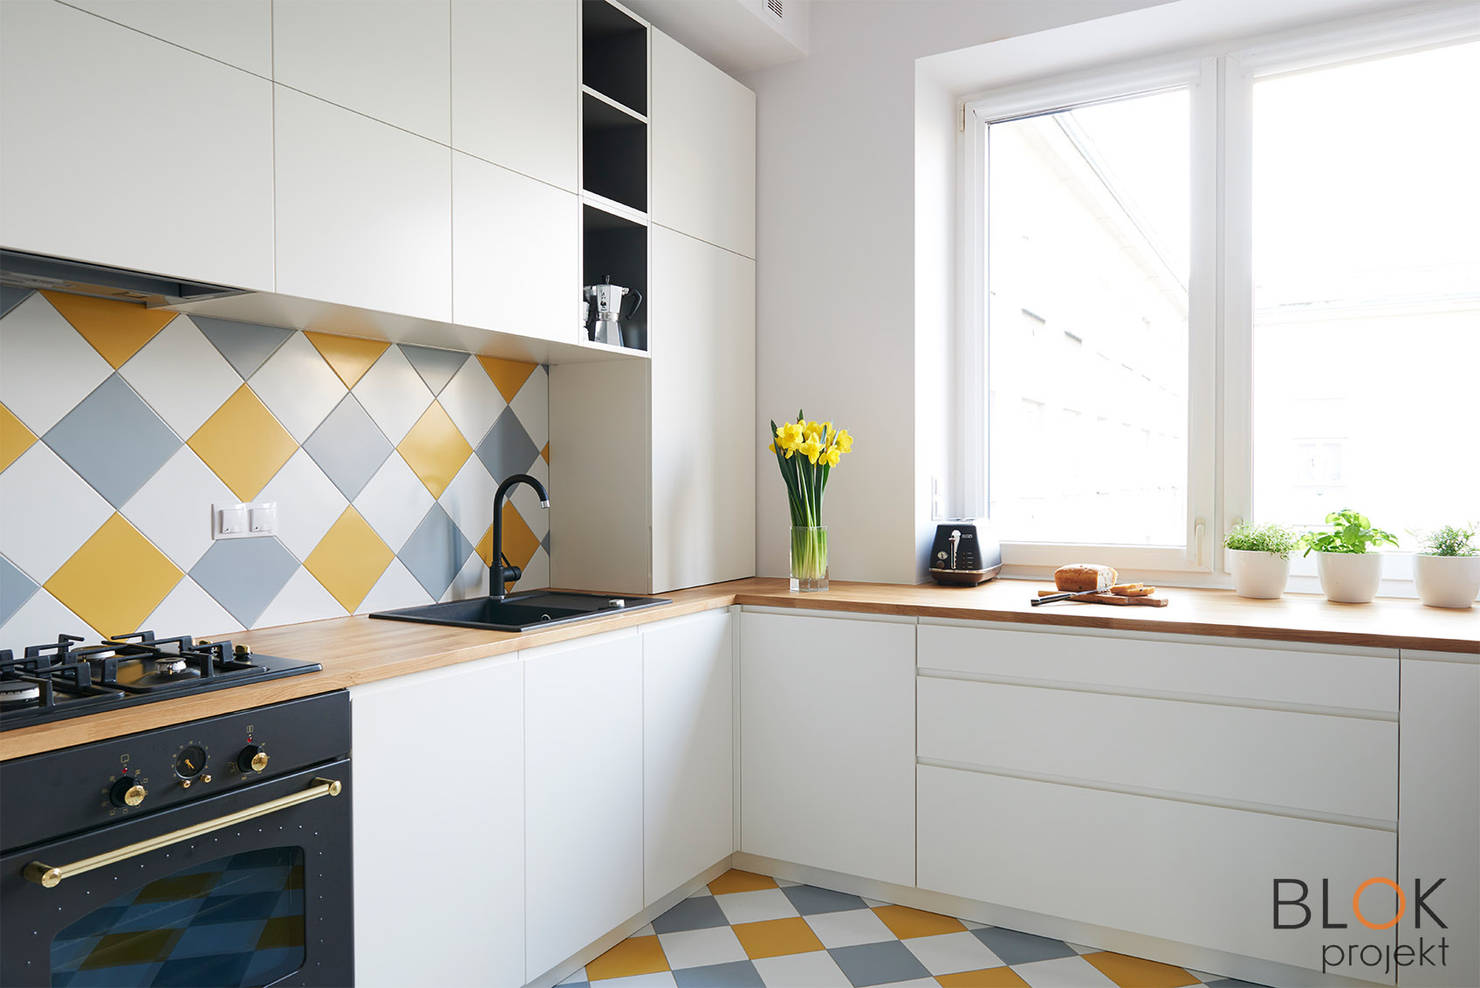 На фото - 10 лайфхаков для дизайна крохотной кухни в квартире
				